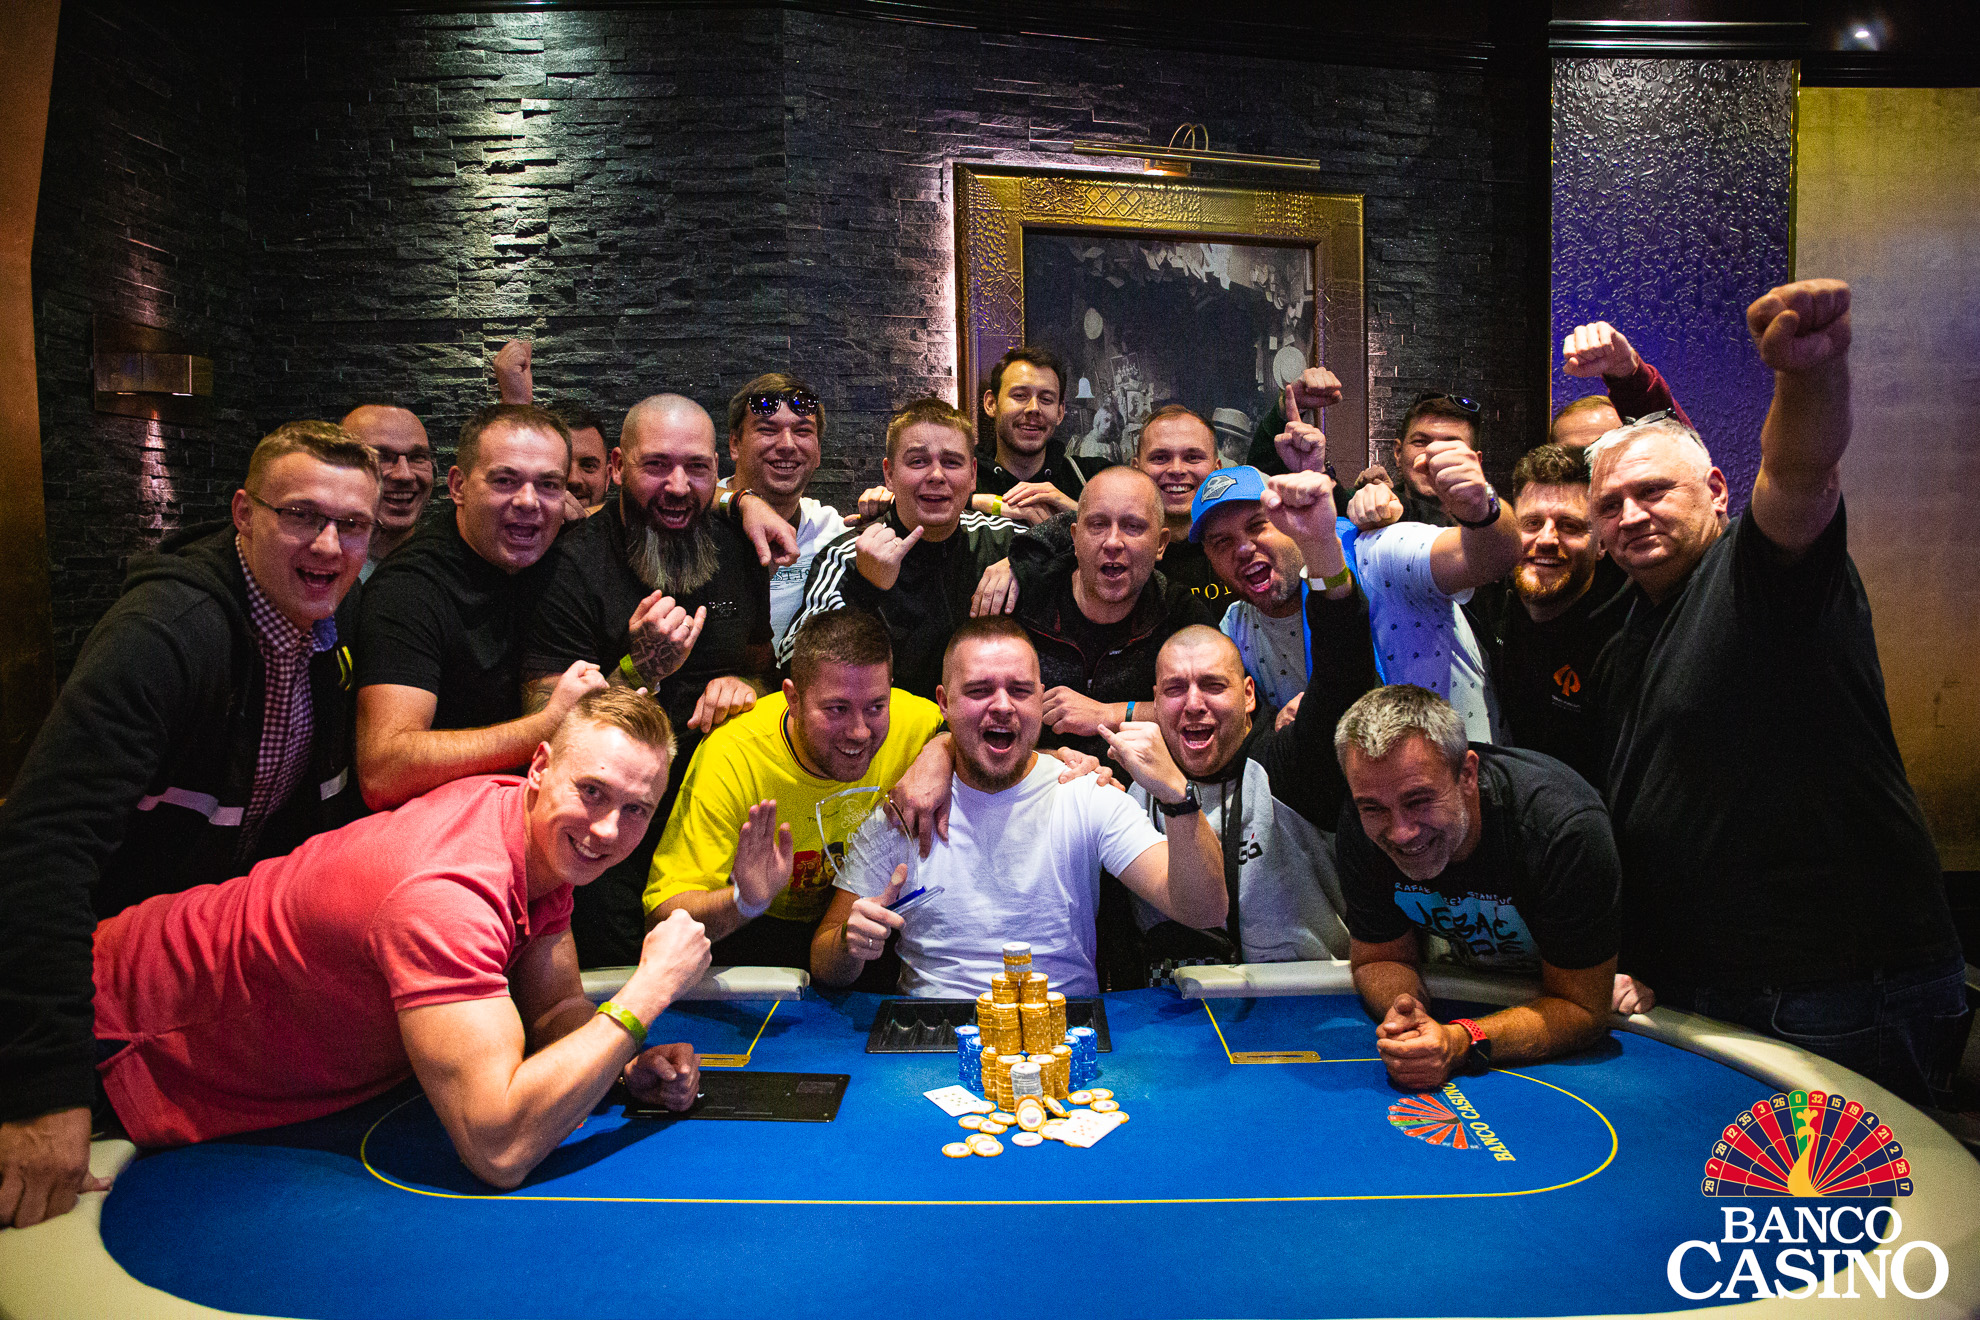 Historicky najväčší pokrový turnaj na Slovensku – Polish Poker Championship Main Event s 5.061 entries a prizepoolom 537.730€!